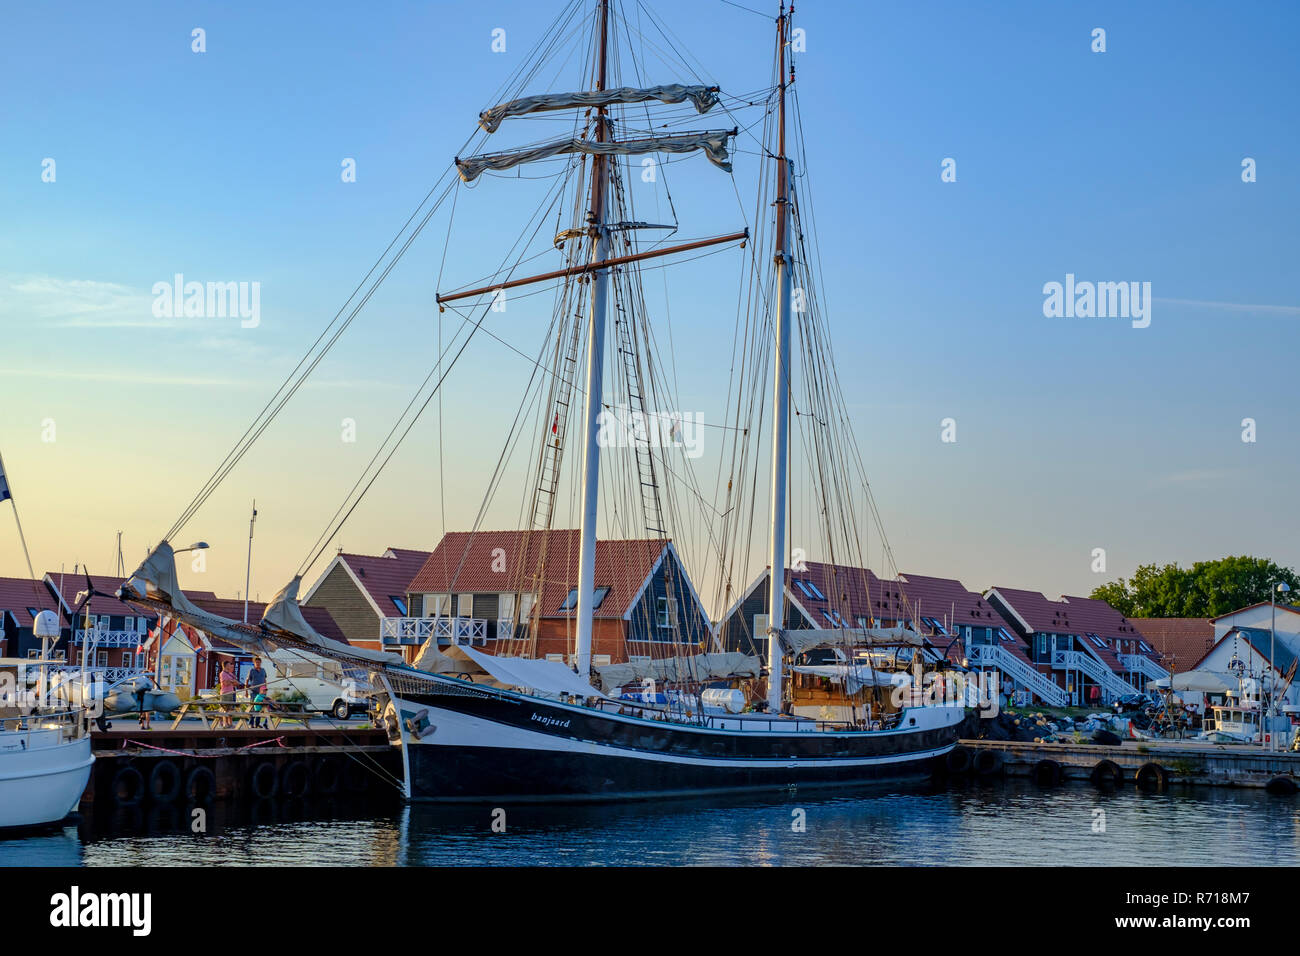 Klintholm Havn, l'île de Moen, Danemark - 16 août 2018 : La goélette BANJAARD a amarré dans le port d'Klinholm Havn. Banque D'Images